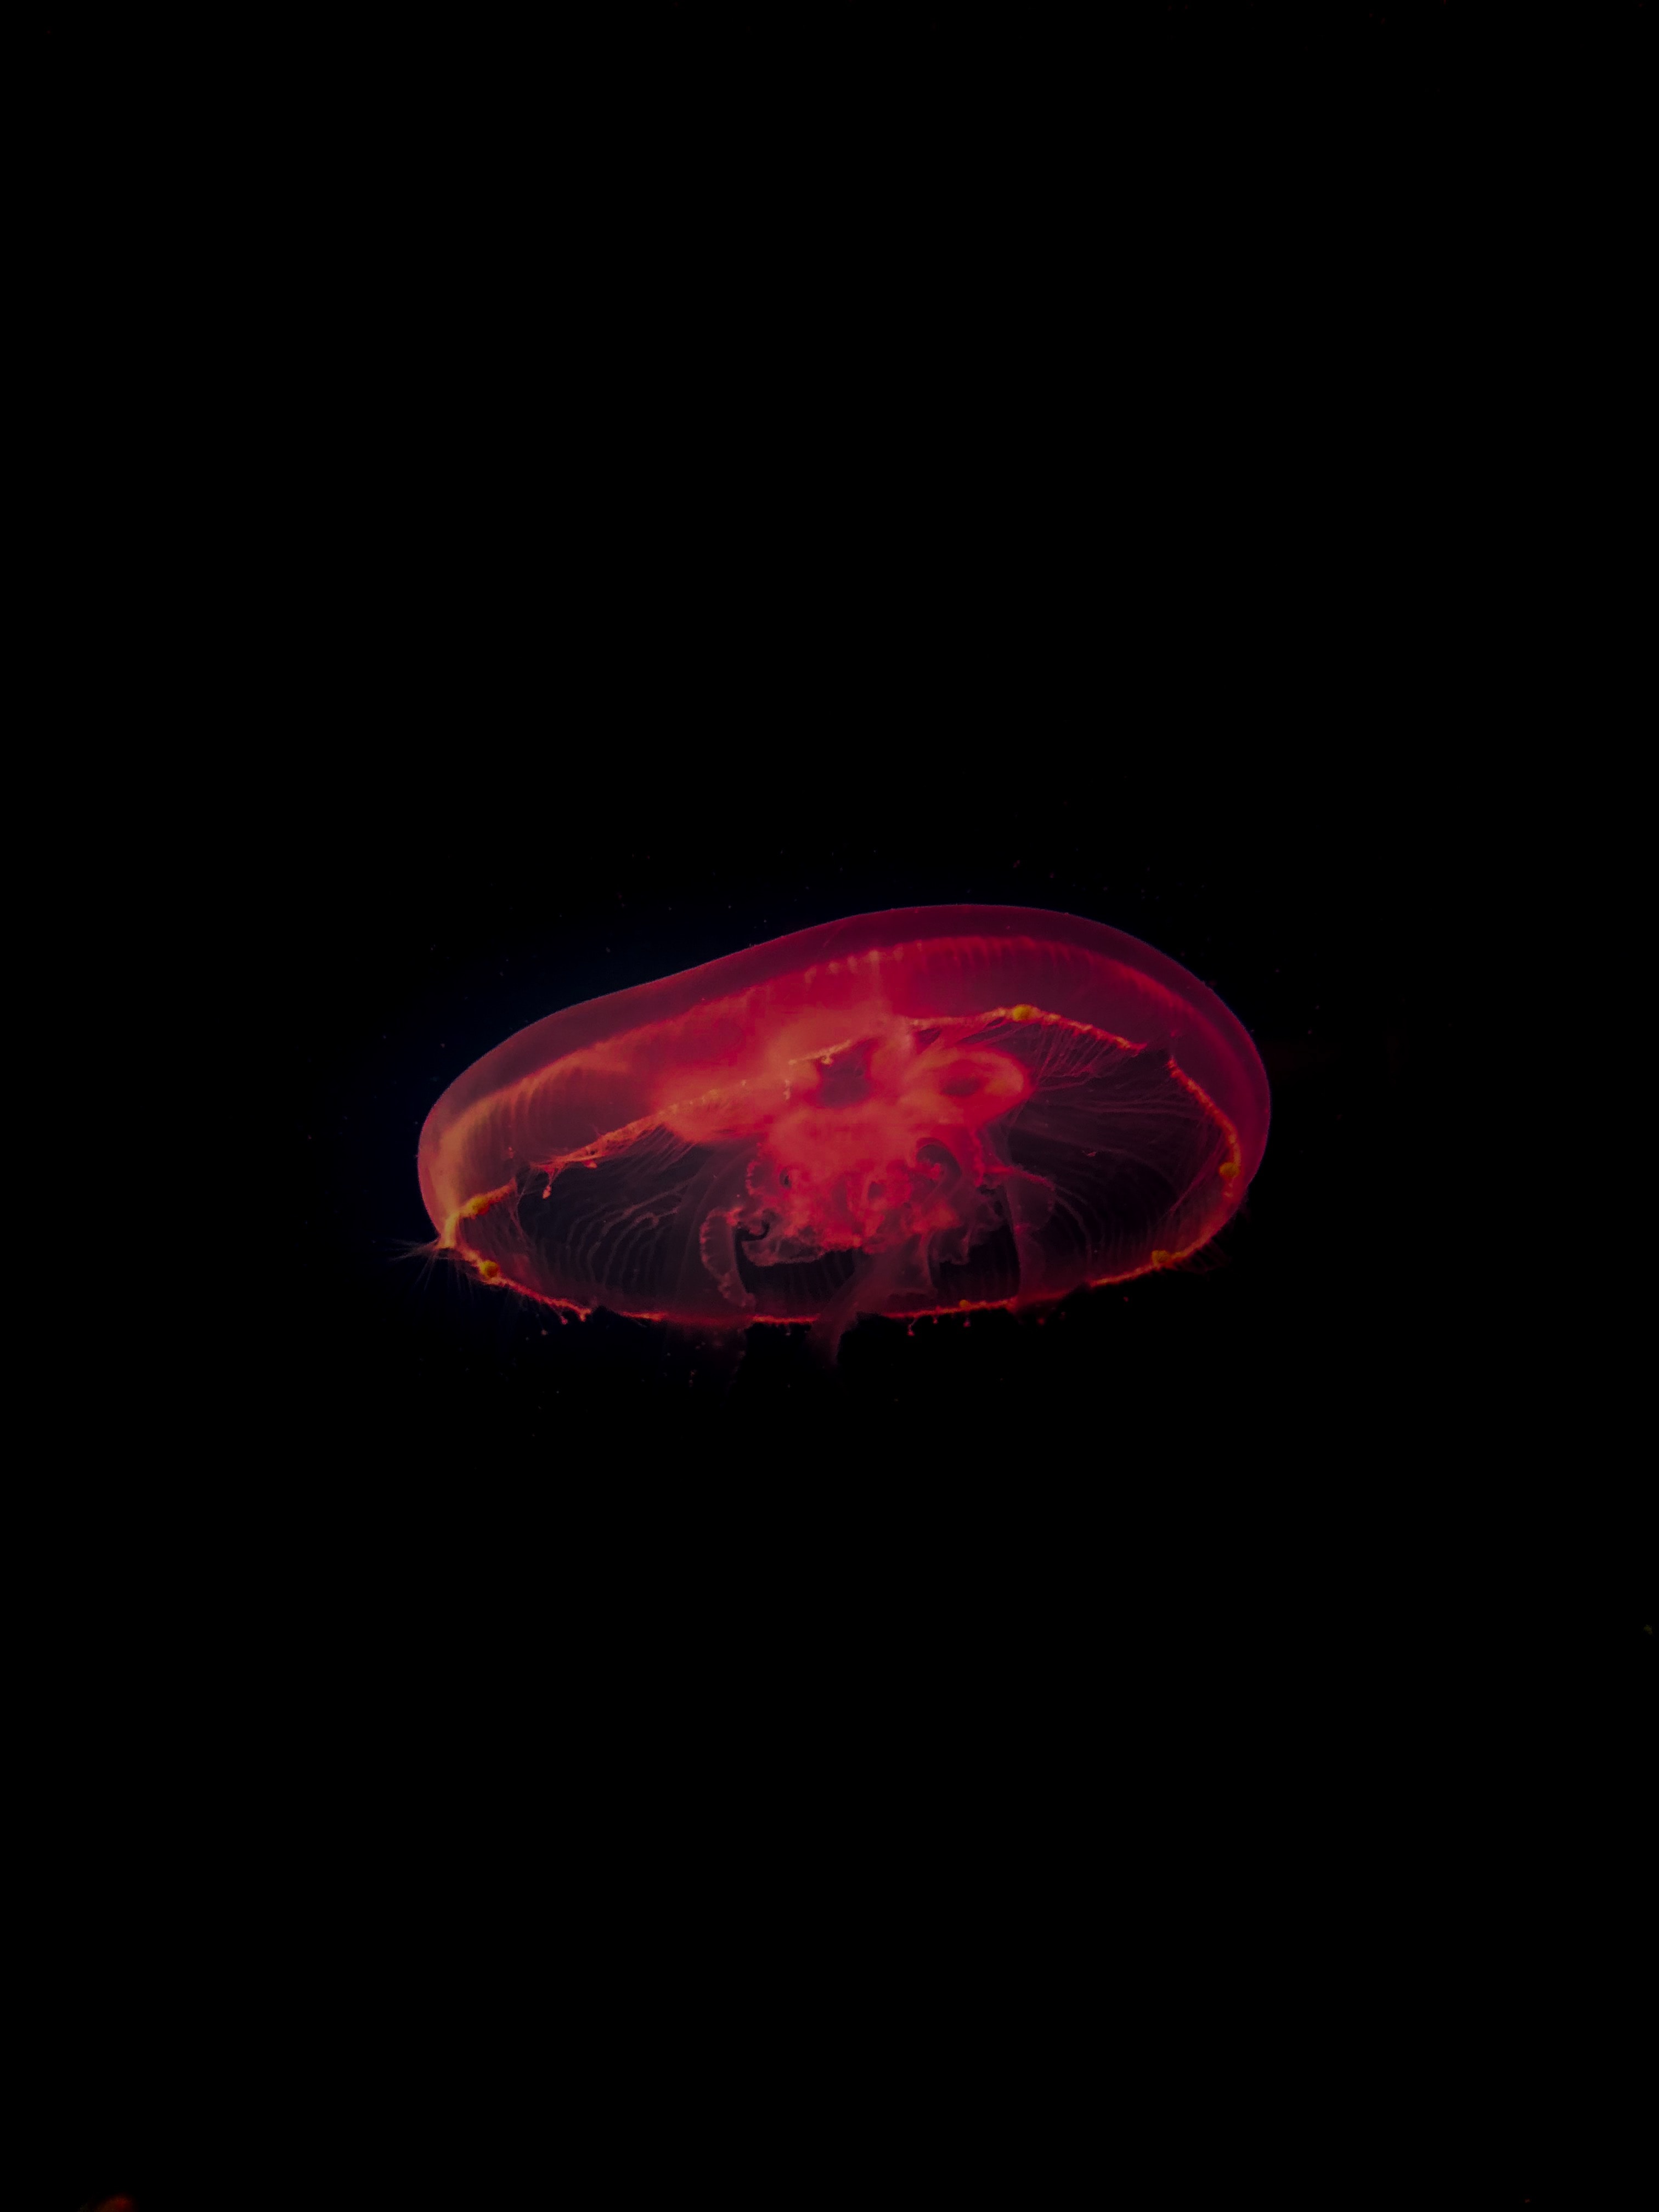 under water, depth, jellyfish, red, dark, underwater images